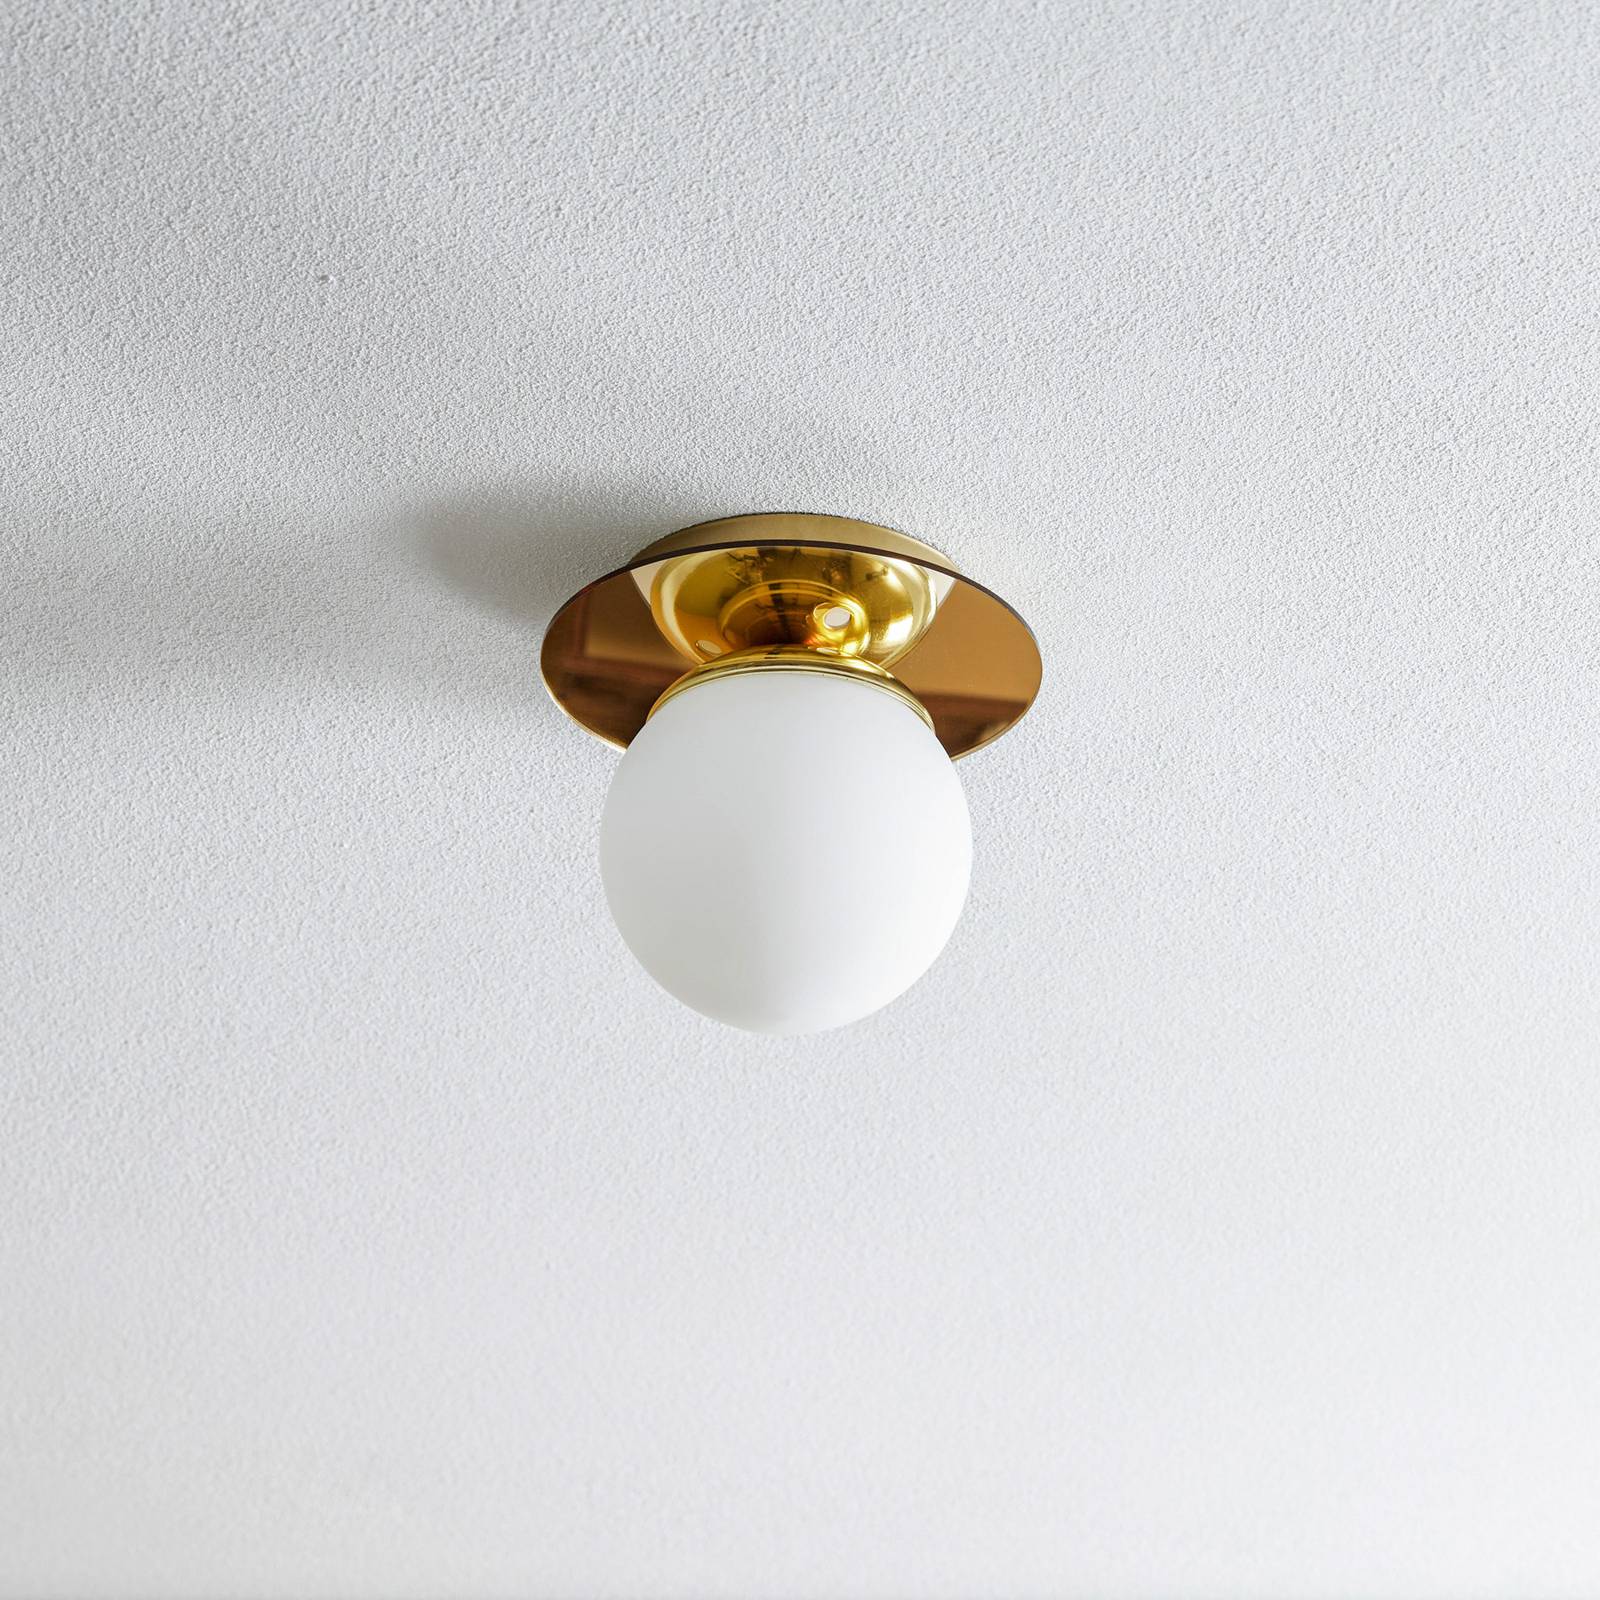 Eko-light plato mennyezeti lámpa, arany színű, fém, opálüveg, ø 19 cm